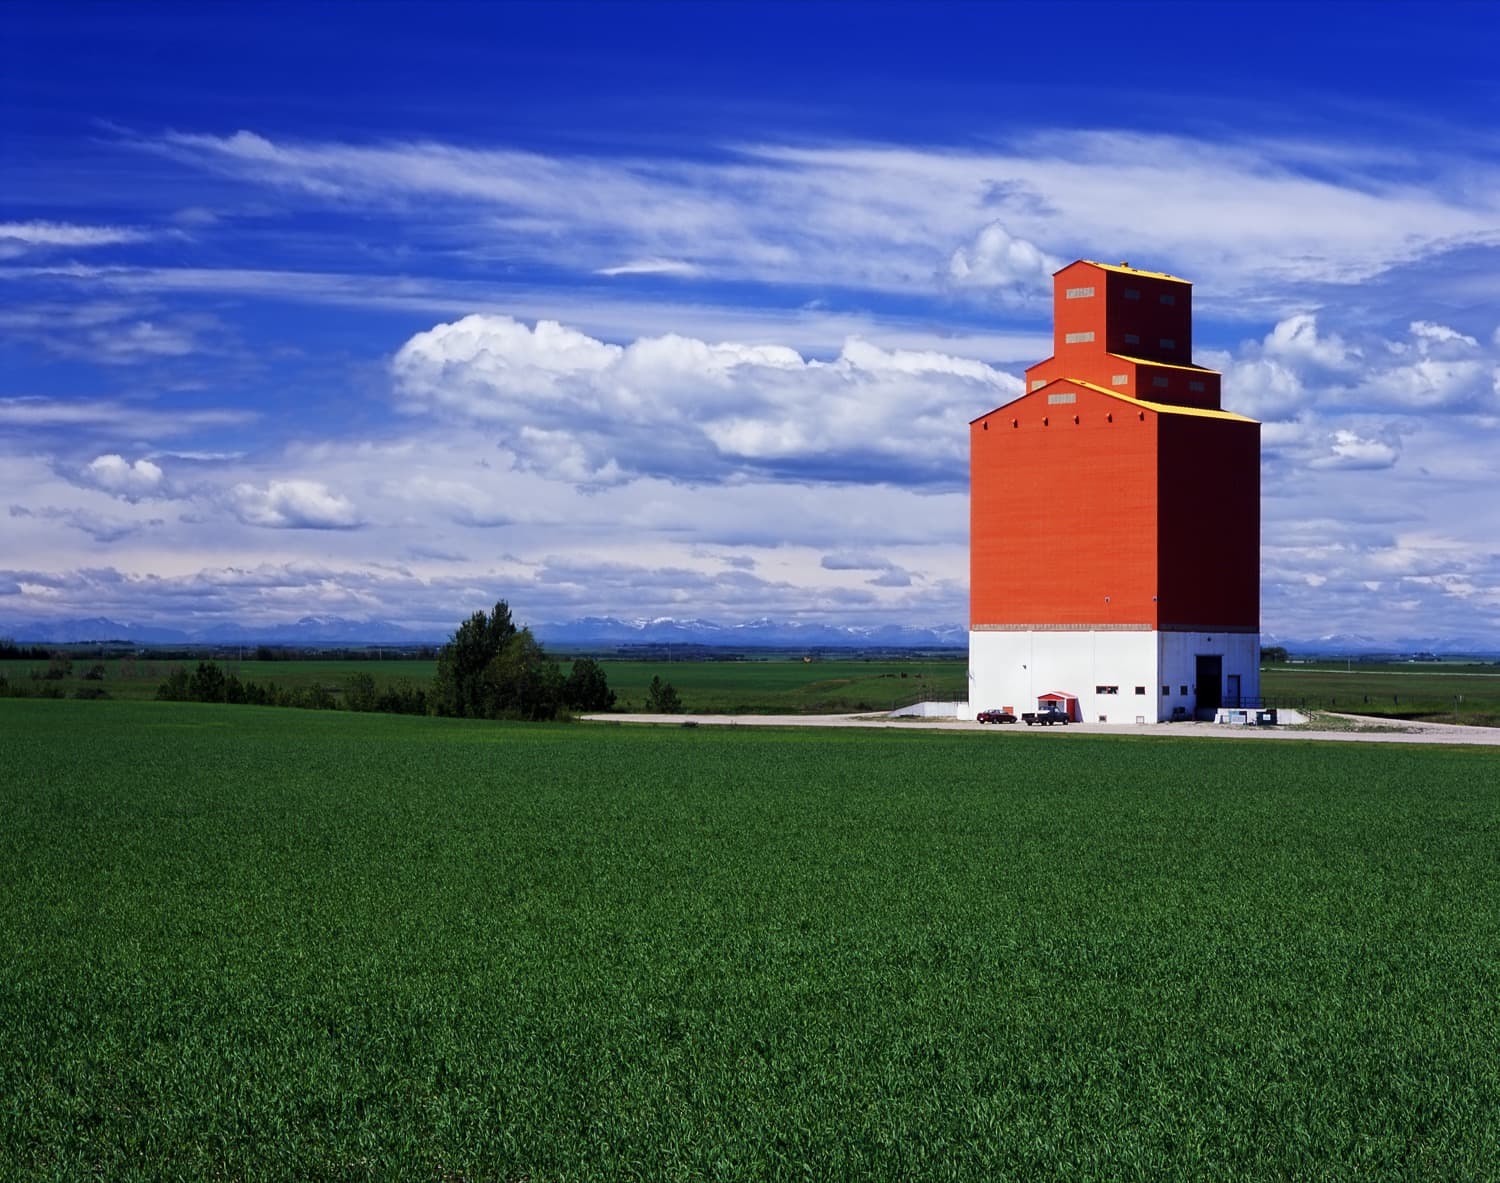 Grain elevator in the prairies